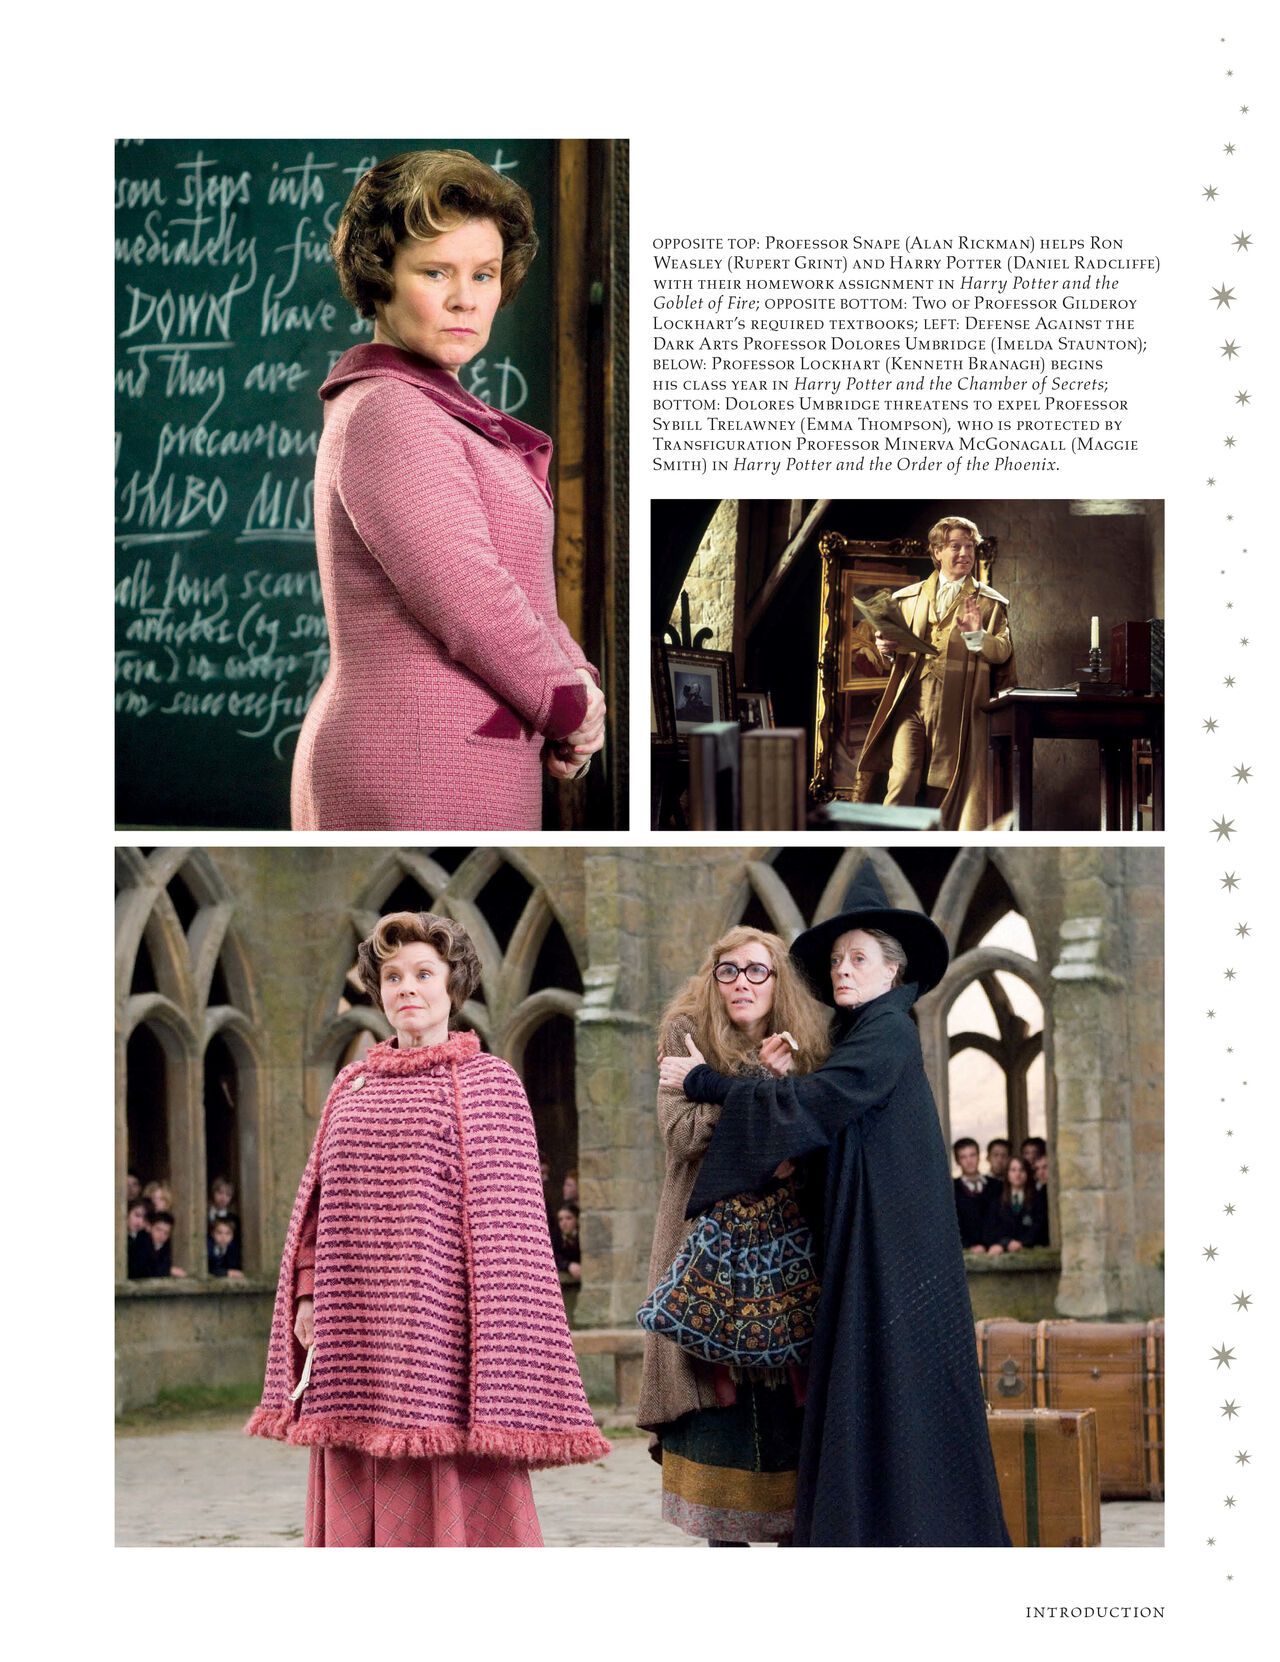 Harry Potter - Film Vault v11 - Hogwarts Professors and Staff 9